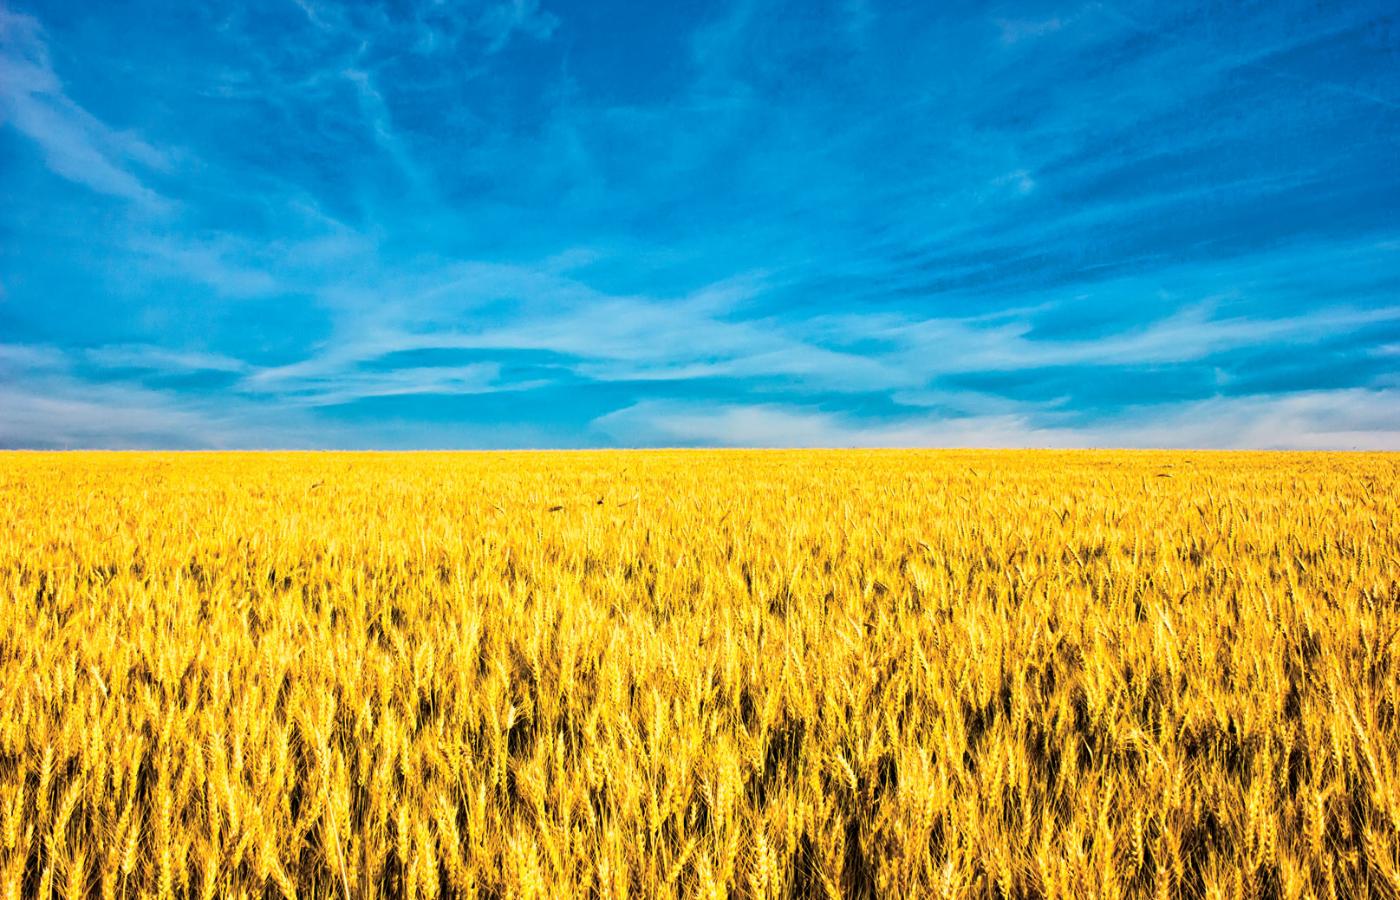 Niebiesko-żółta flaga Ukrainy jest niczym innym, jak tylko zbożowym polem pod błękitnym niebem.